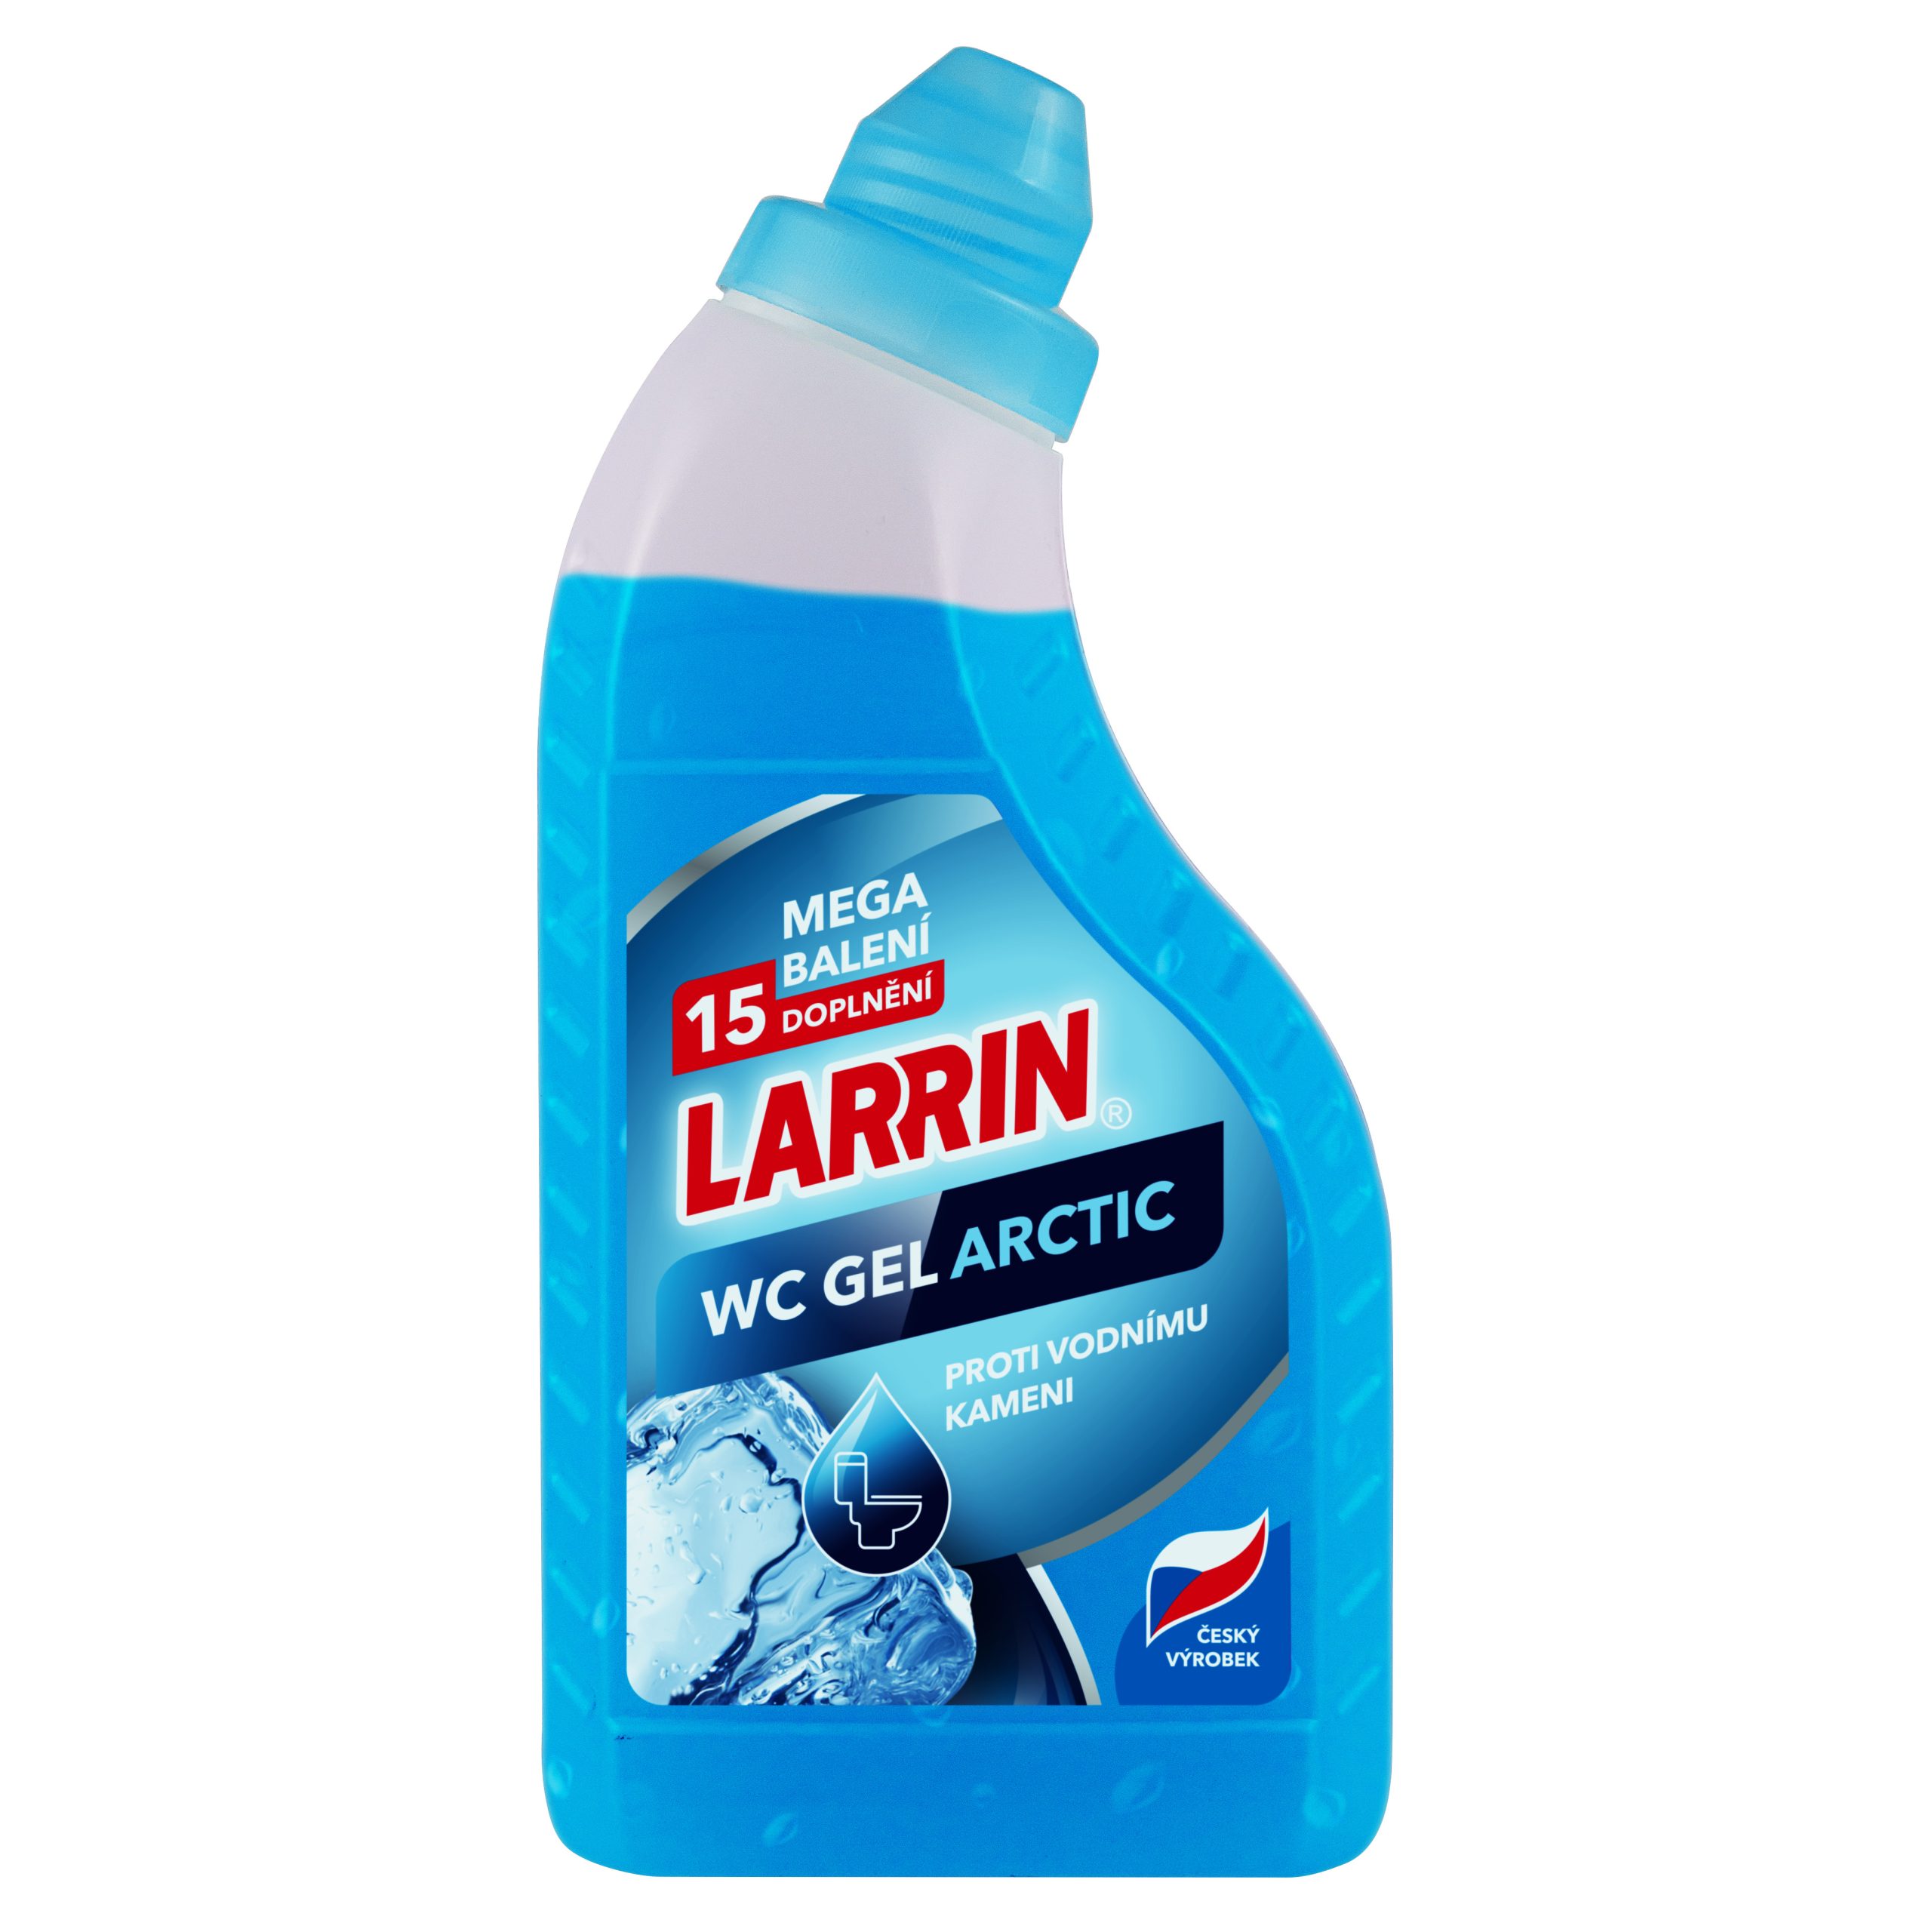 01176 Larrin WC Gel Arctic,